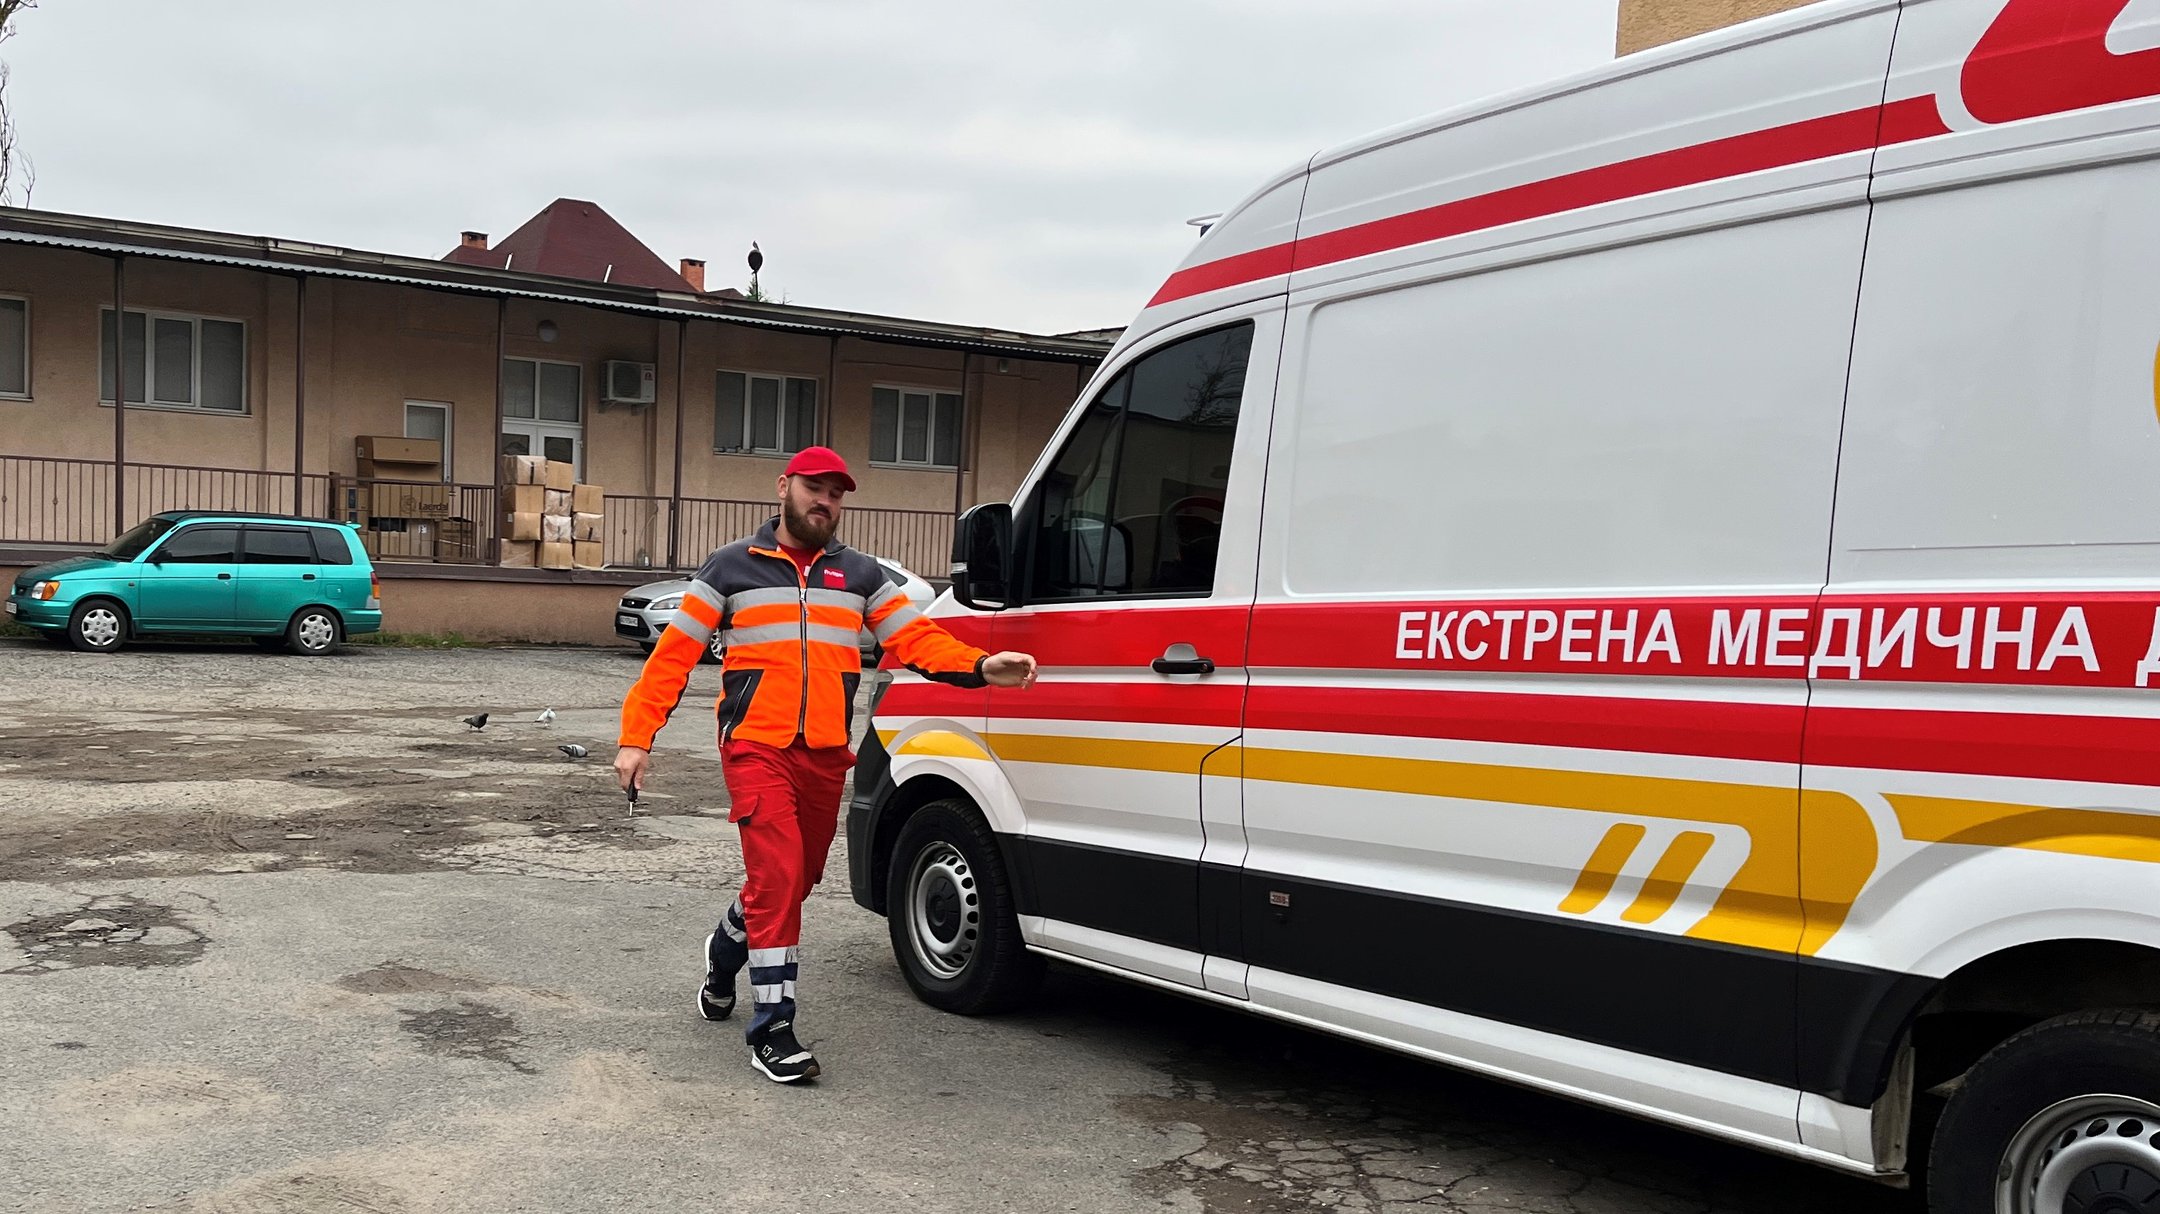 Близько 450 водіїв працюють у Закарпатському центрі екстреної меддопомоги (ФОТО, ВІДЕО)